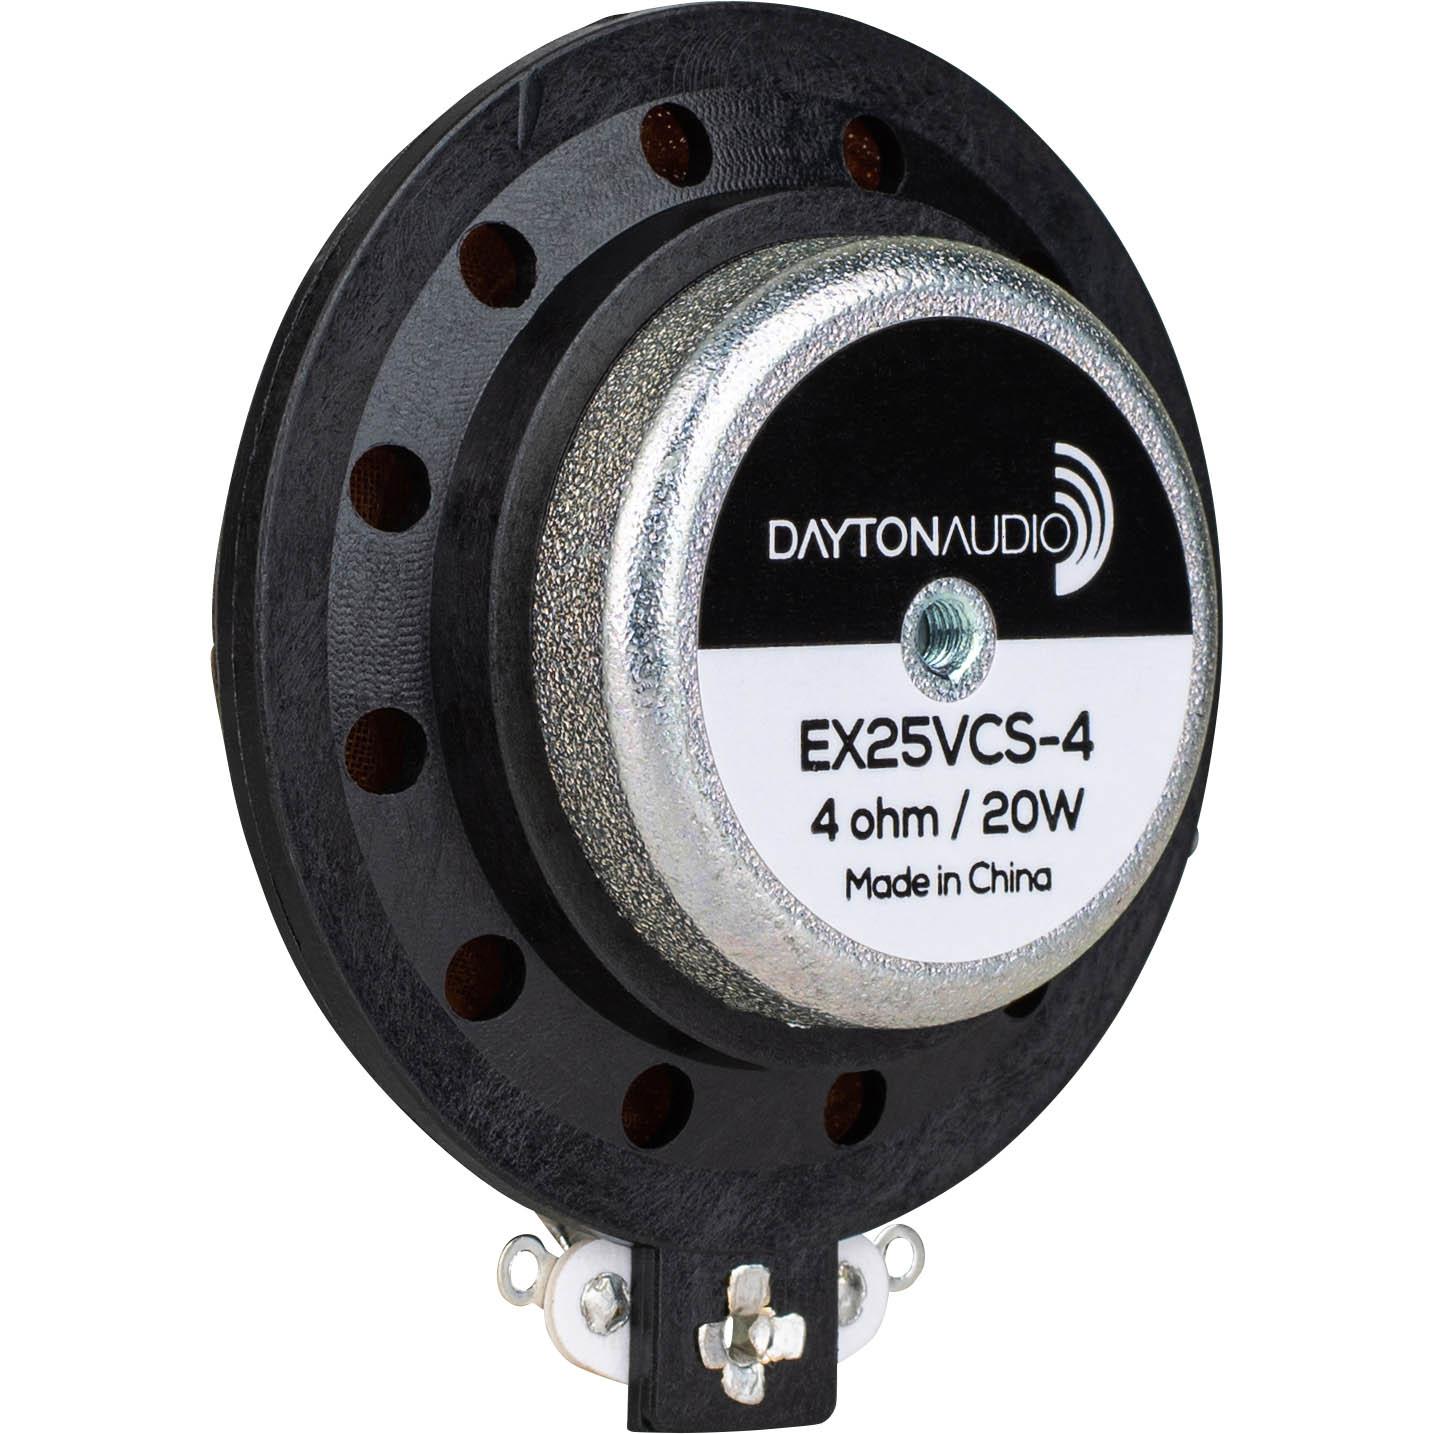 Dayton Audio EX25VCS-4 Xs[J[jbg 2.5cm ʋCRlbNX TXyVuOtv GLTC^[ UXs[J[ 20W 4